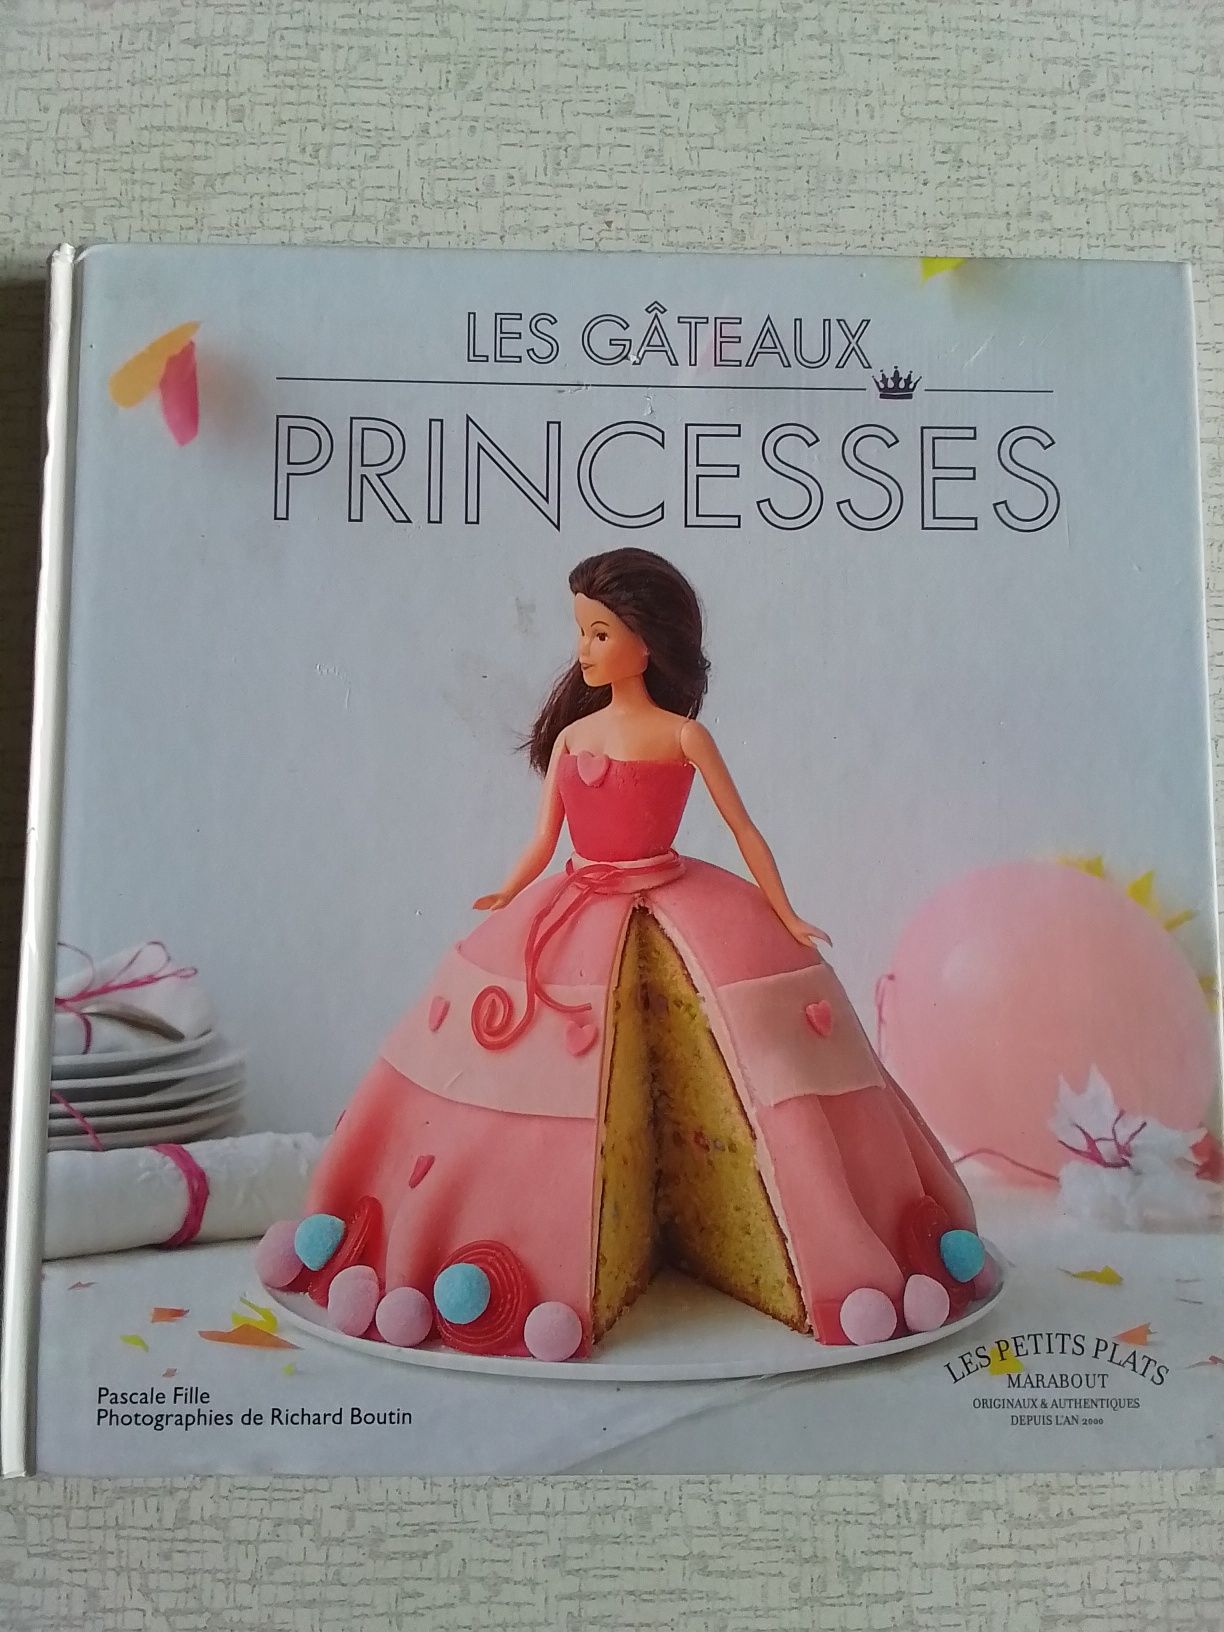 Книга для кондитеров. Торт в виде принцессы. Французский язык